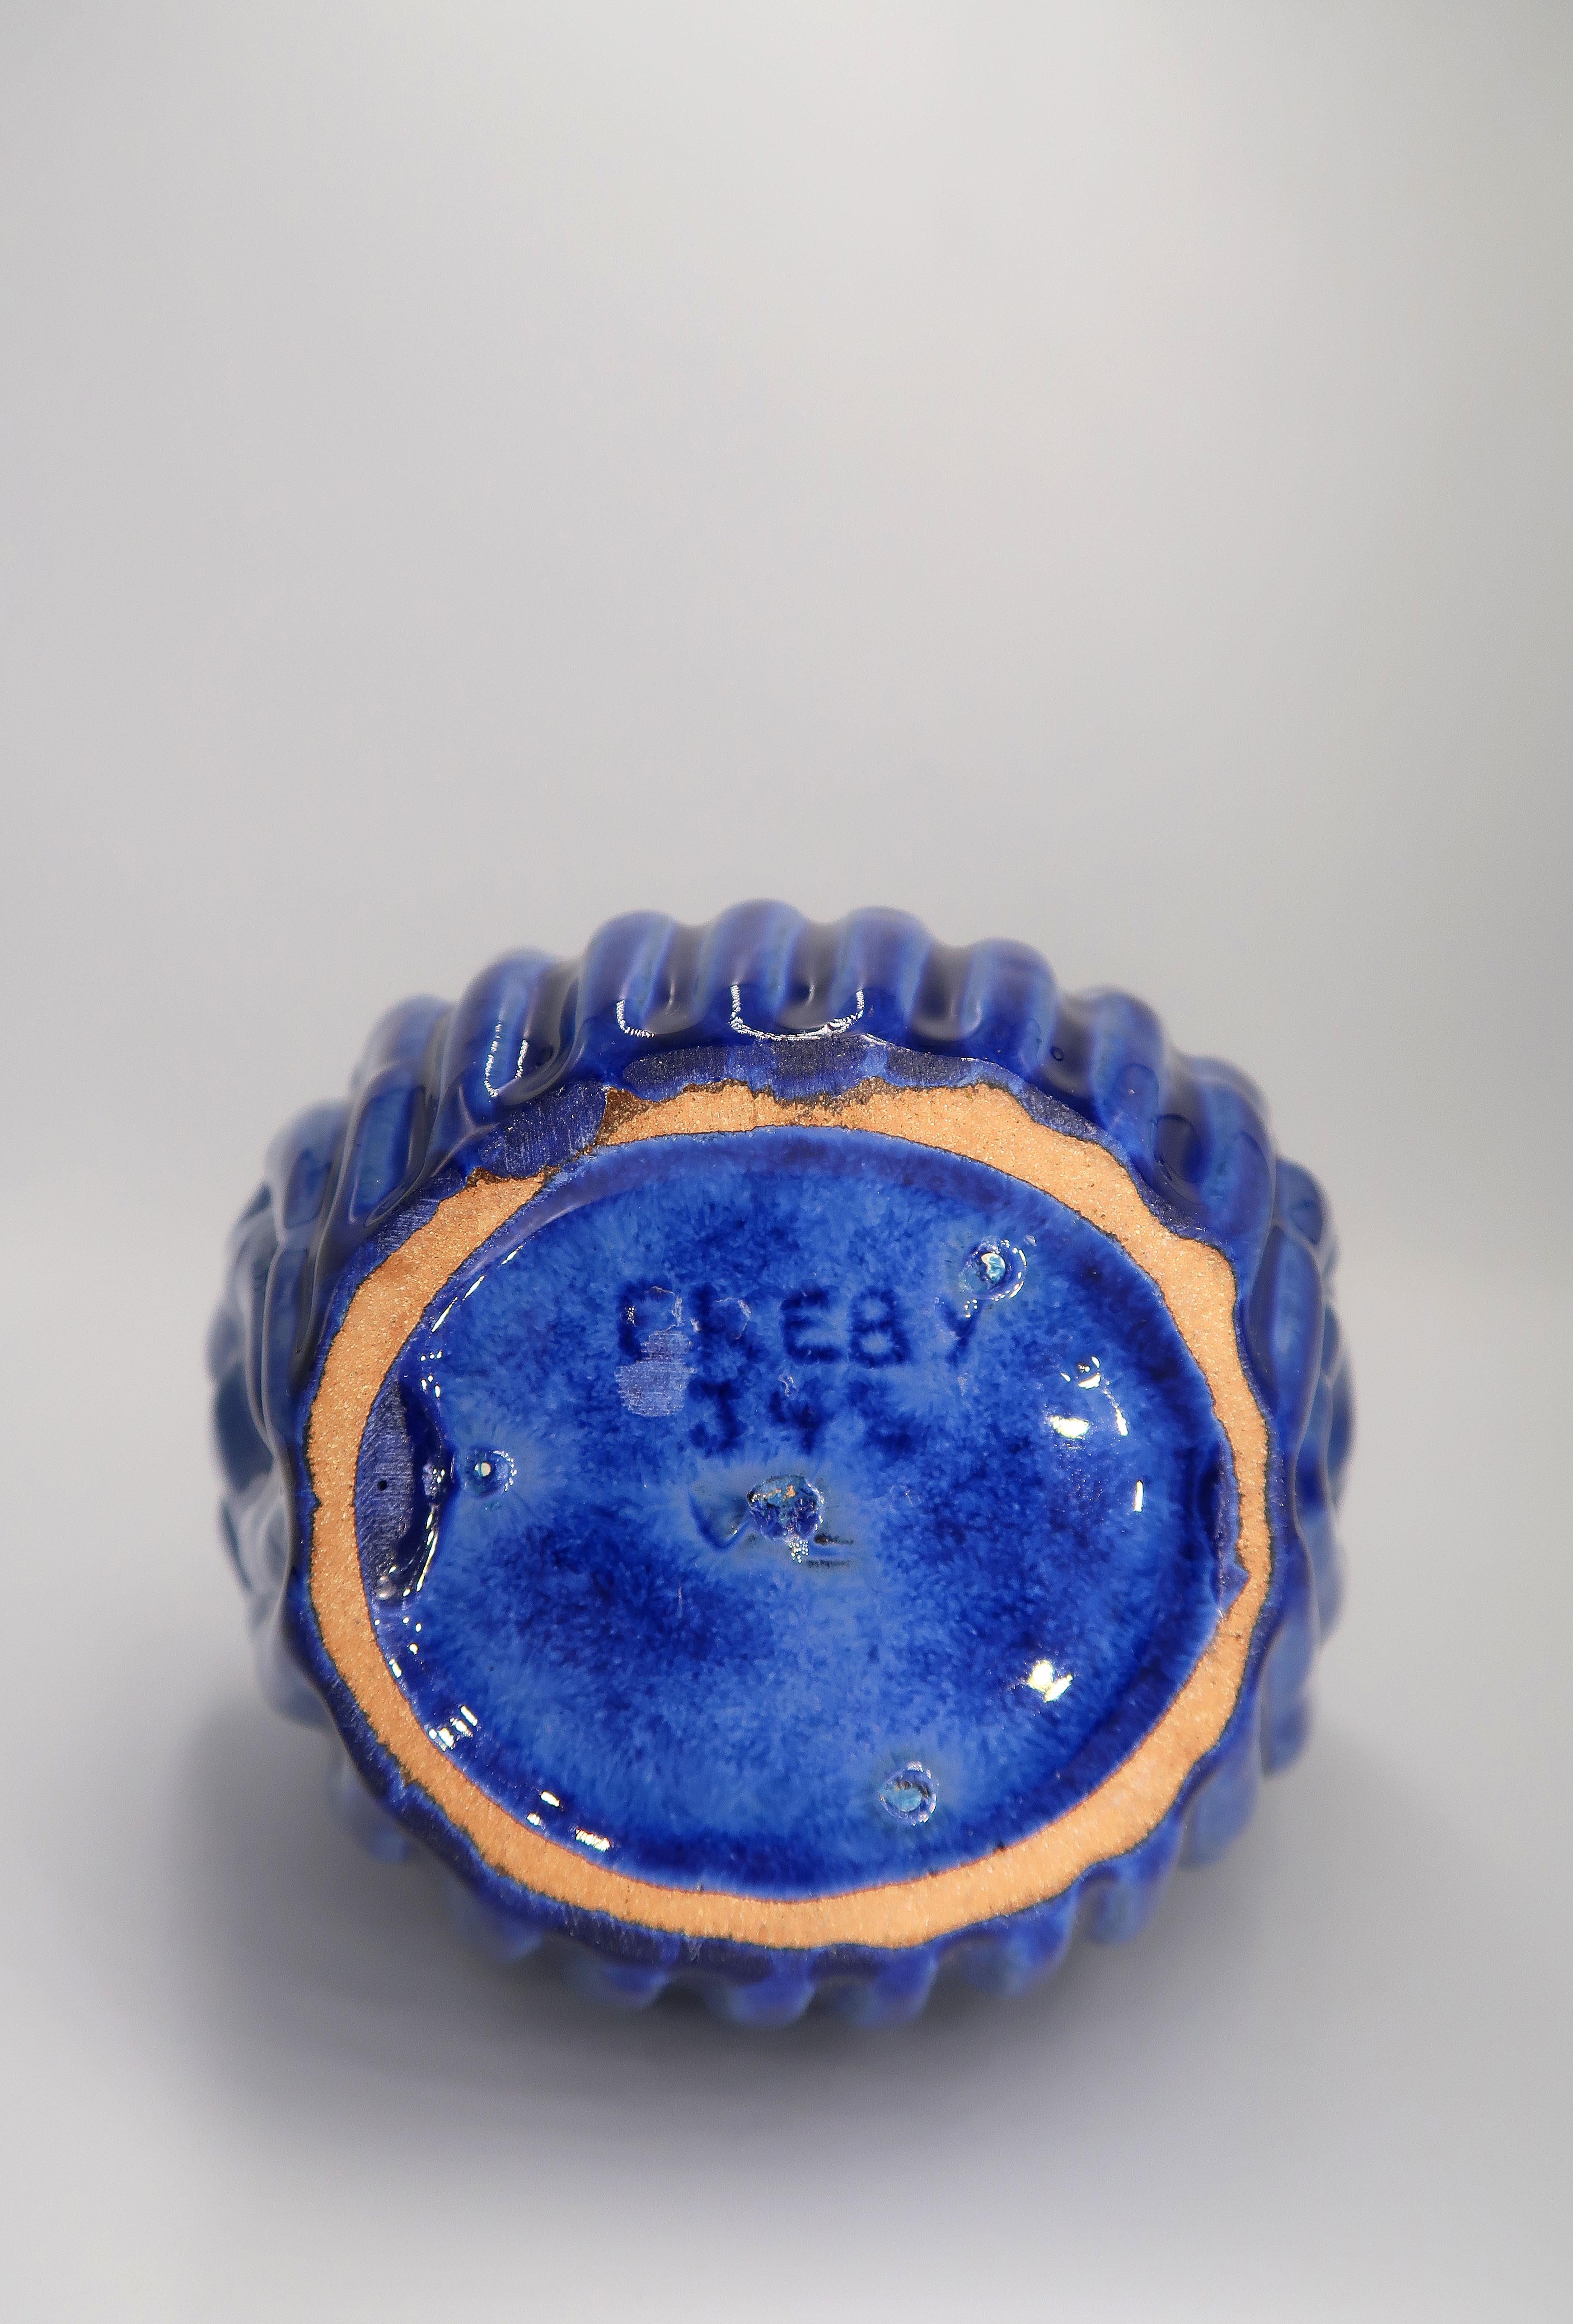 1940s Art Deco Cobalt Blue Shell Shaped Vase, Vicke Lindstrand, Sweden For Sale 3